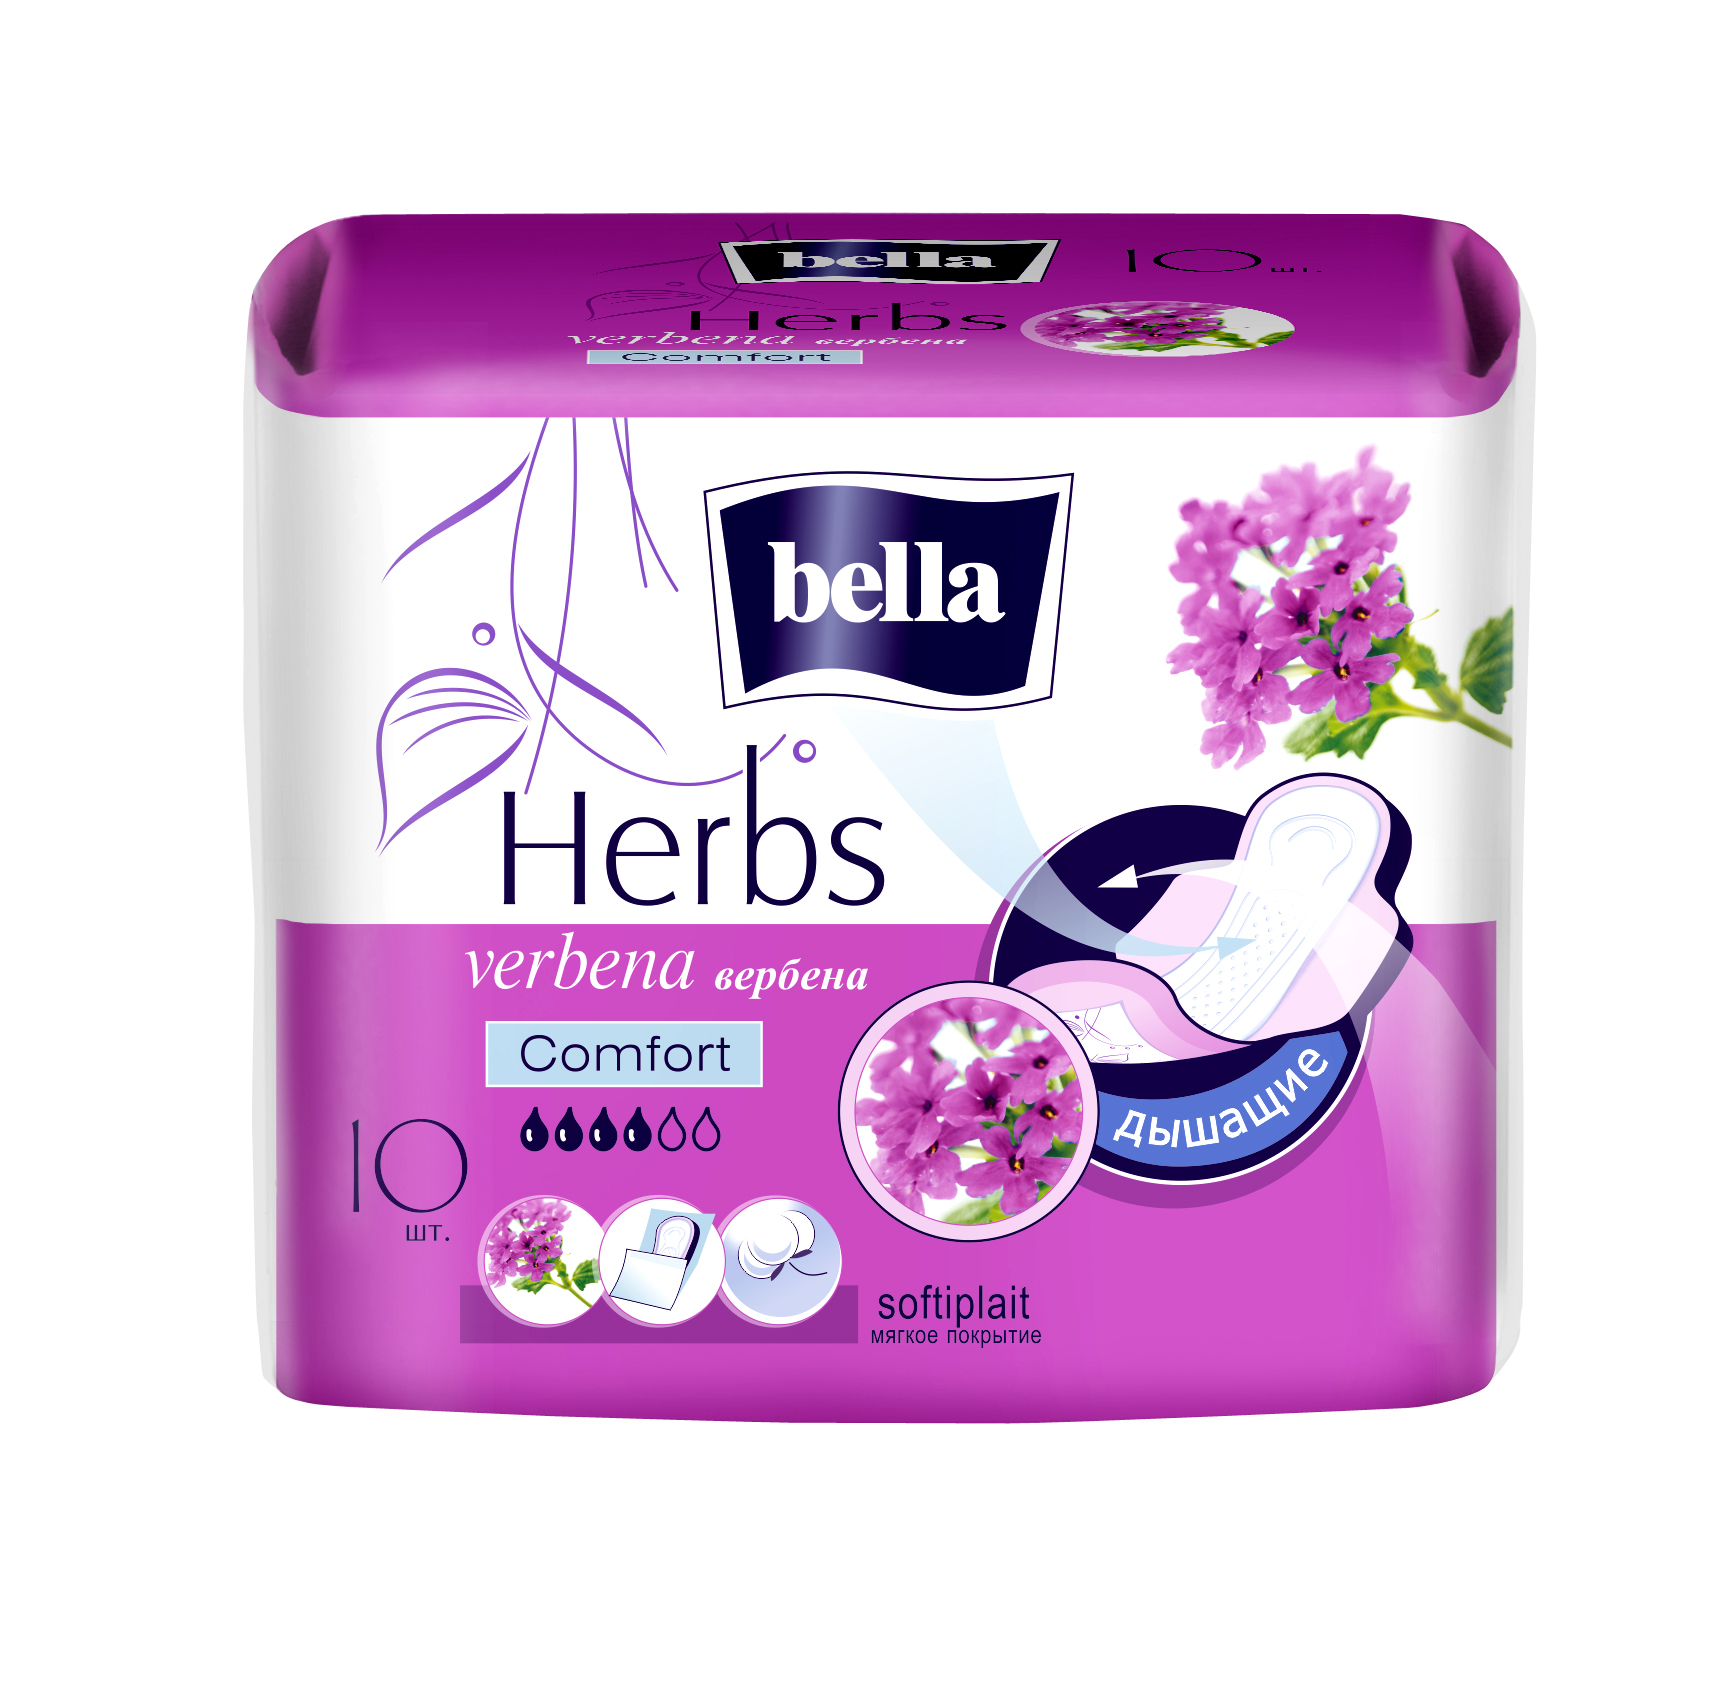 Гигиенические прокладки для женщин. Прокладки Bella Herbs Verbena komfort 10шт с экстрактом вербены. Bella прокладки Herbs Verbena Comfort softiplait.